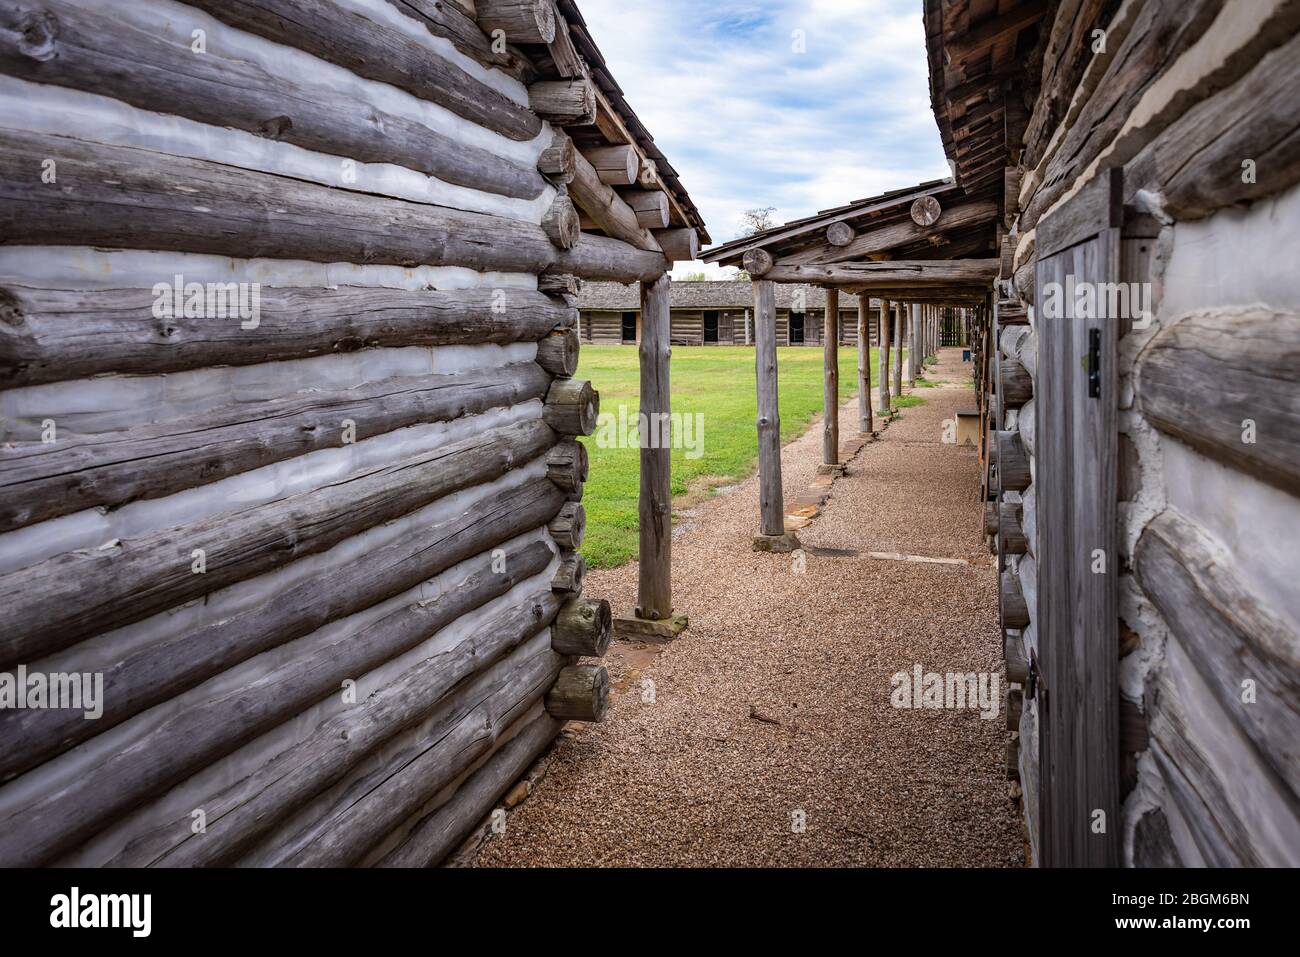 À l'intérieur de la réserve de fort Gibson, un lieu militaire historique de l'Oklahoma qui gardait la frontière américaine dans le territoire indien de 1824 à 1888. Banque D'Images